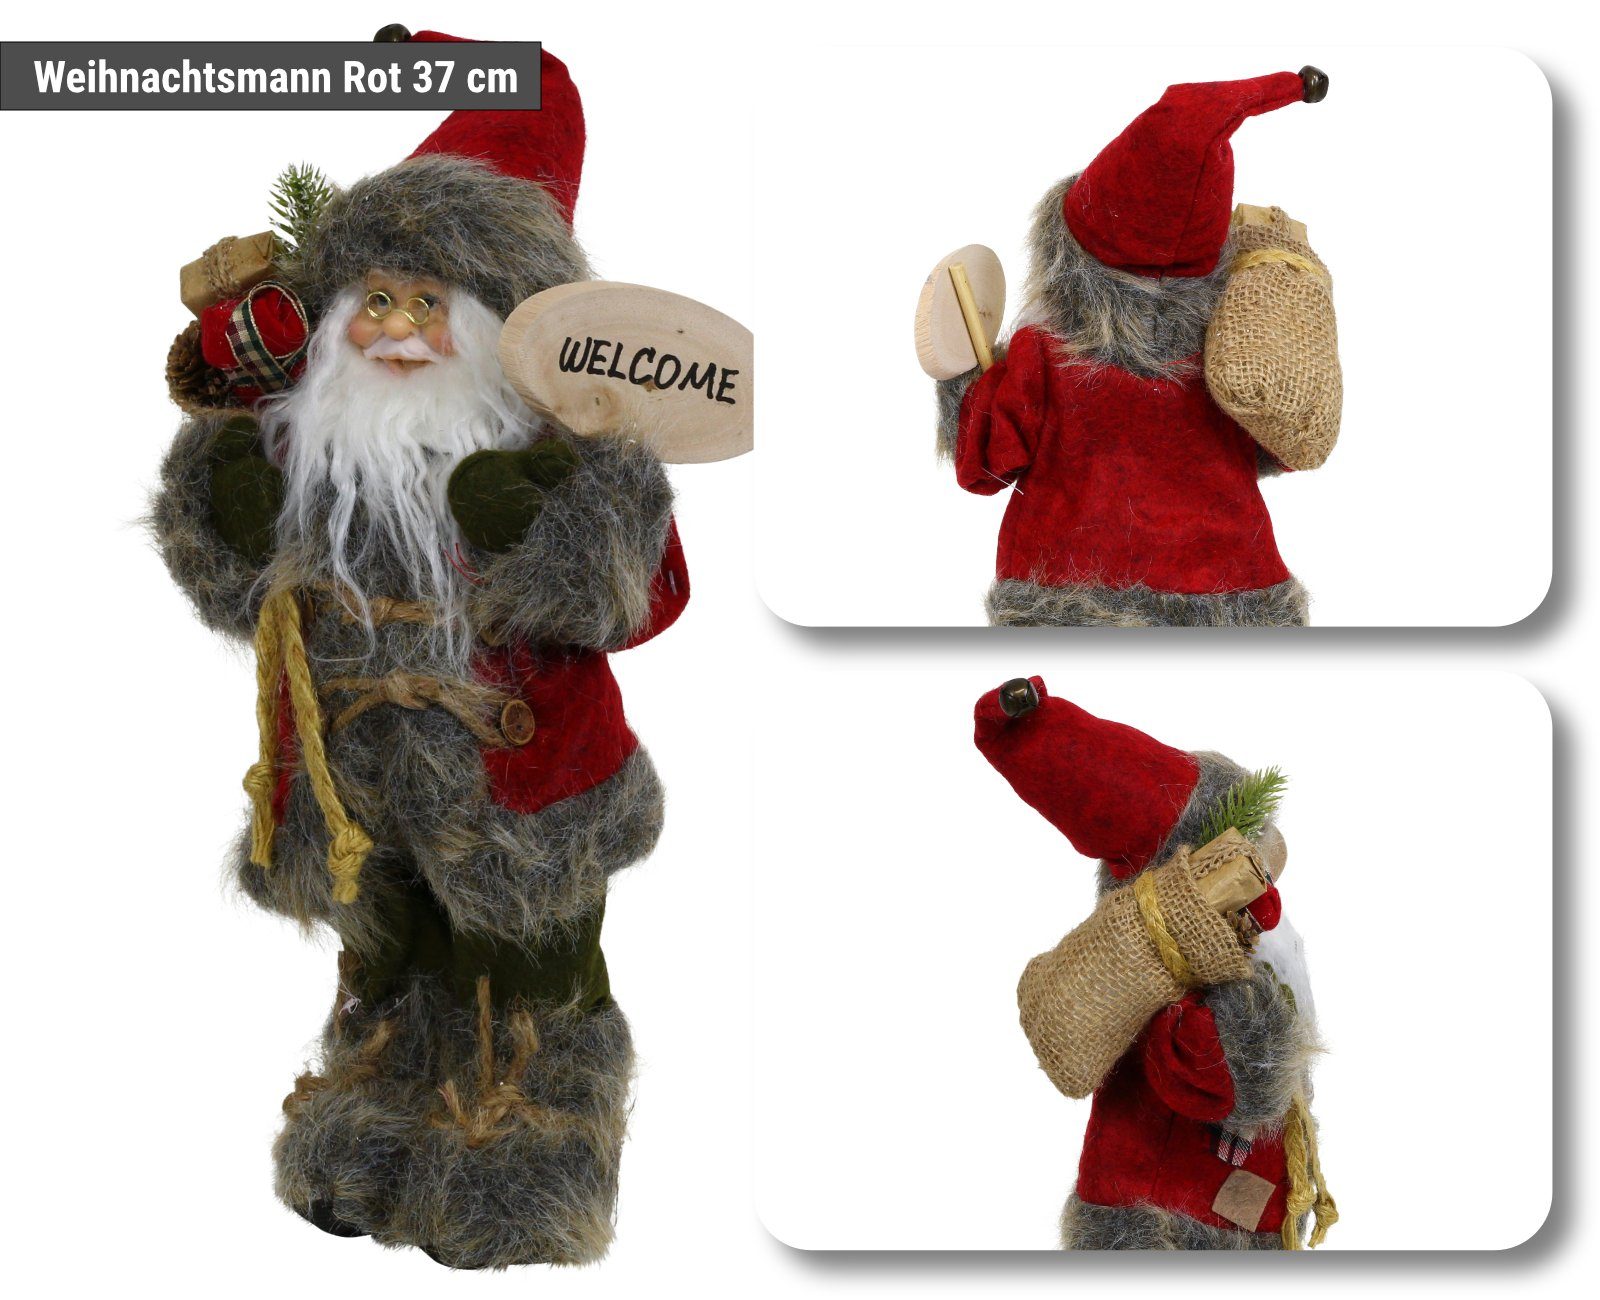 HAGO Weihnachtsfigur Weihnachtsmann Nikolaus Figur mit stehend Geschenkesack Weihnachtsdeko